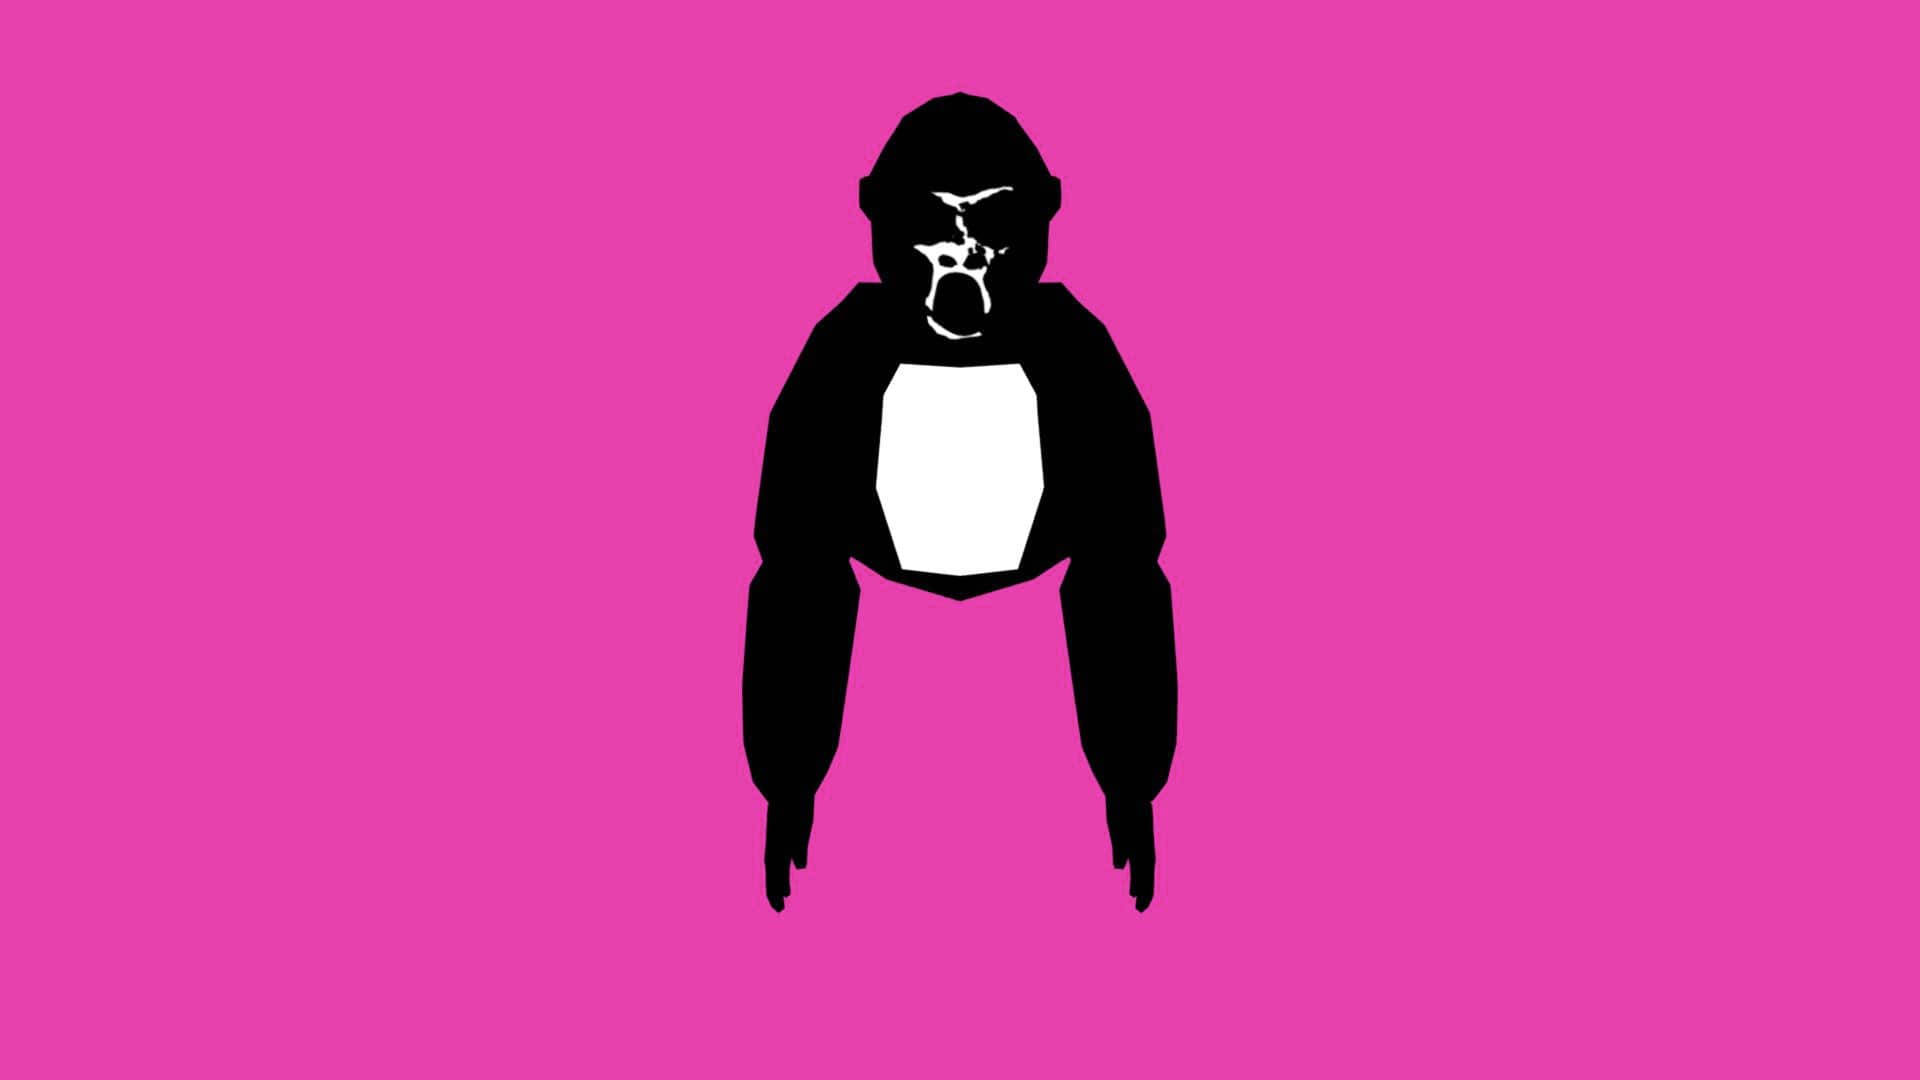 Artede Gorila En Rosa. Fondo de pantalla